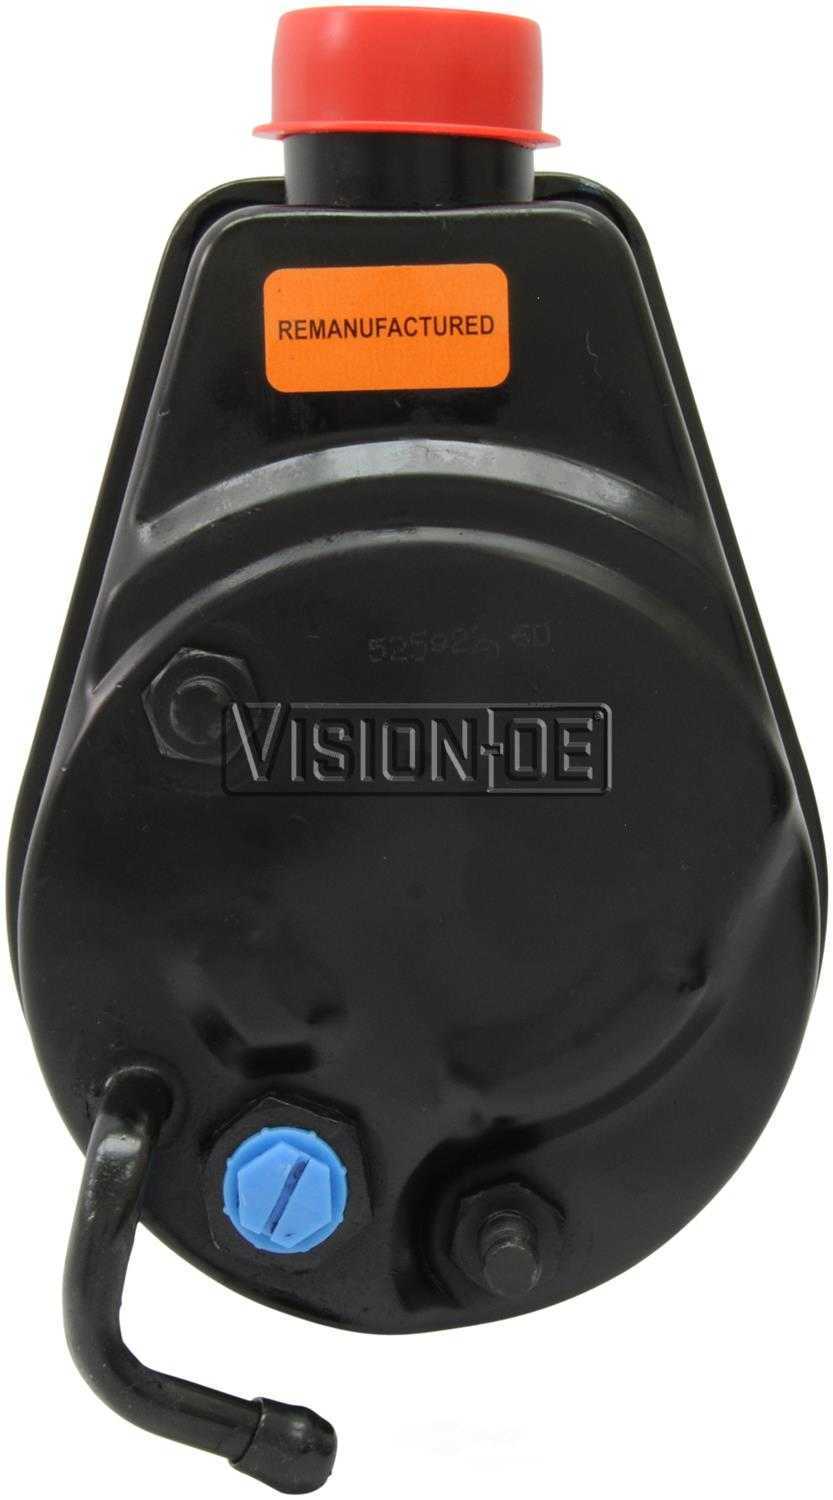 VISION-OE - Reman Power Steering Pump - VOE 732-2108